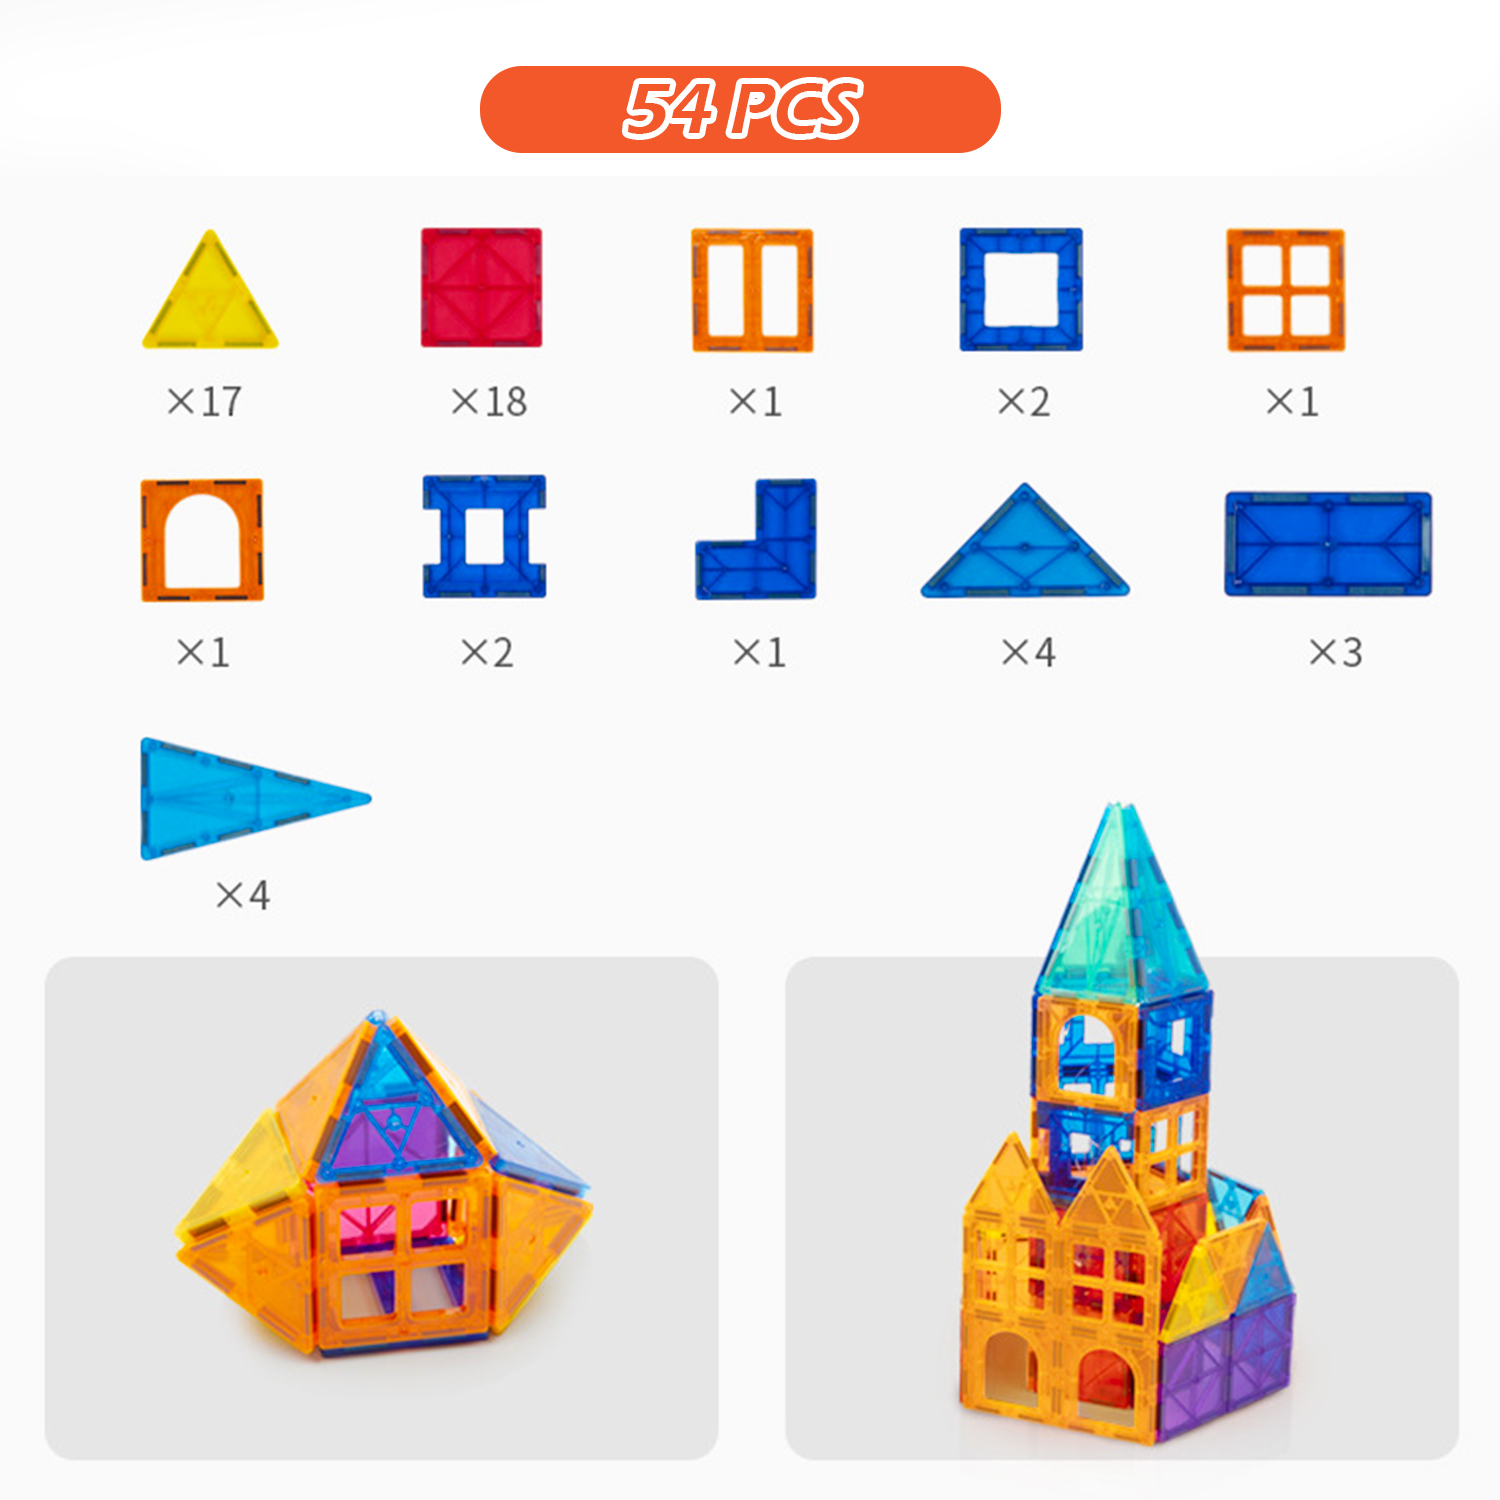 54 PCS Kids Magnetic Tiles Toys